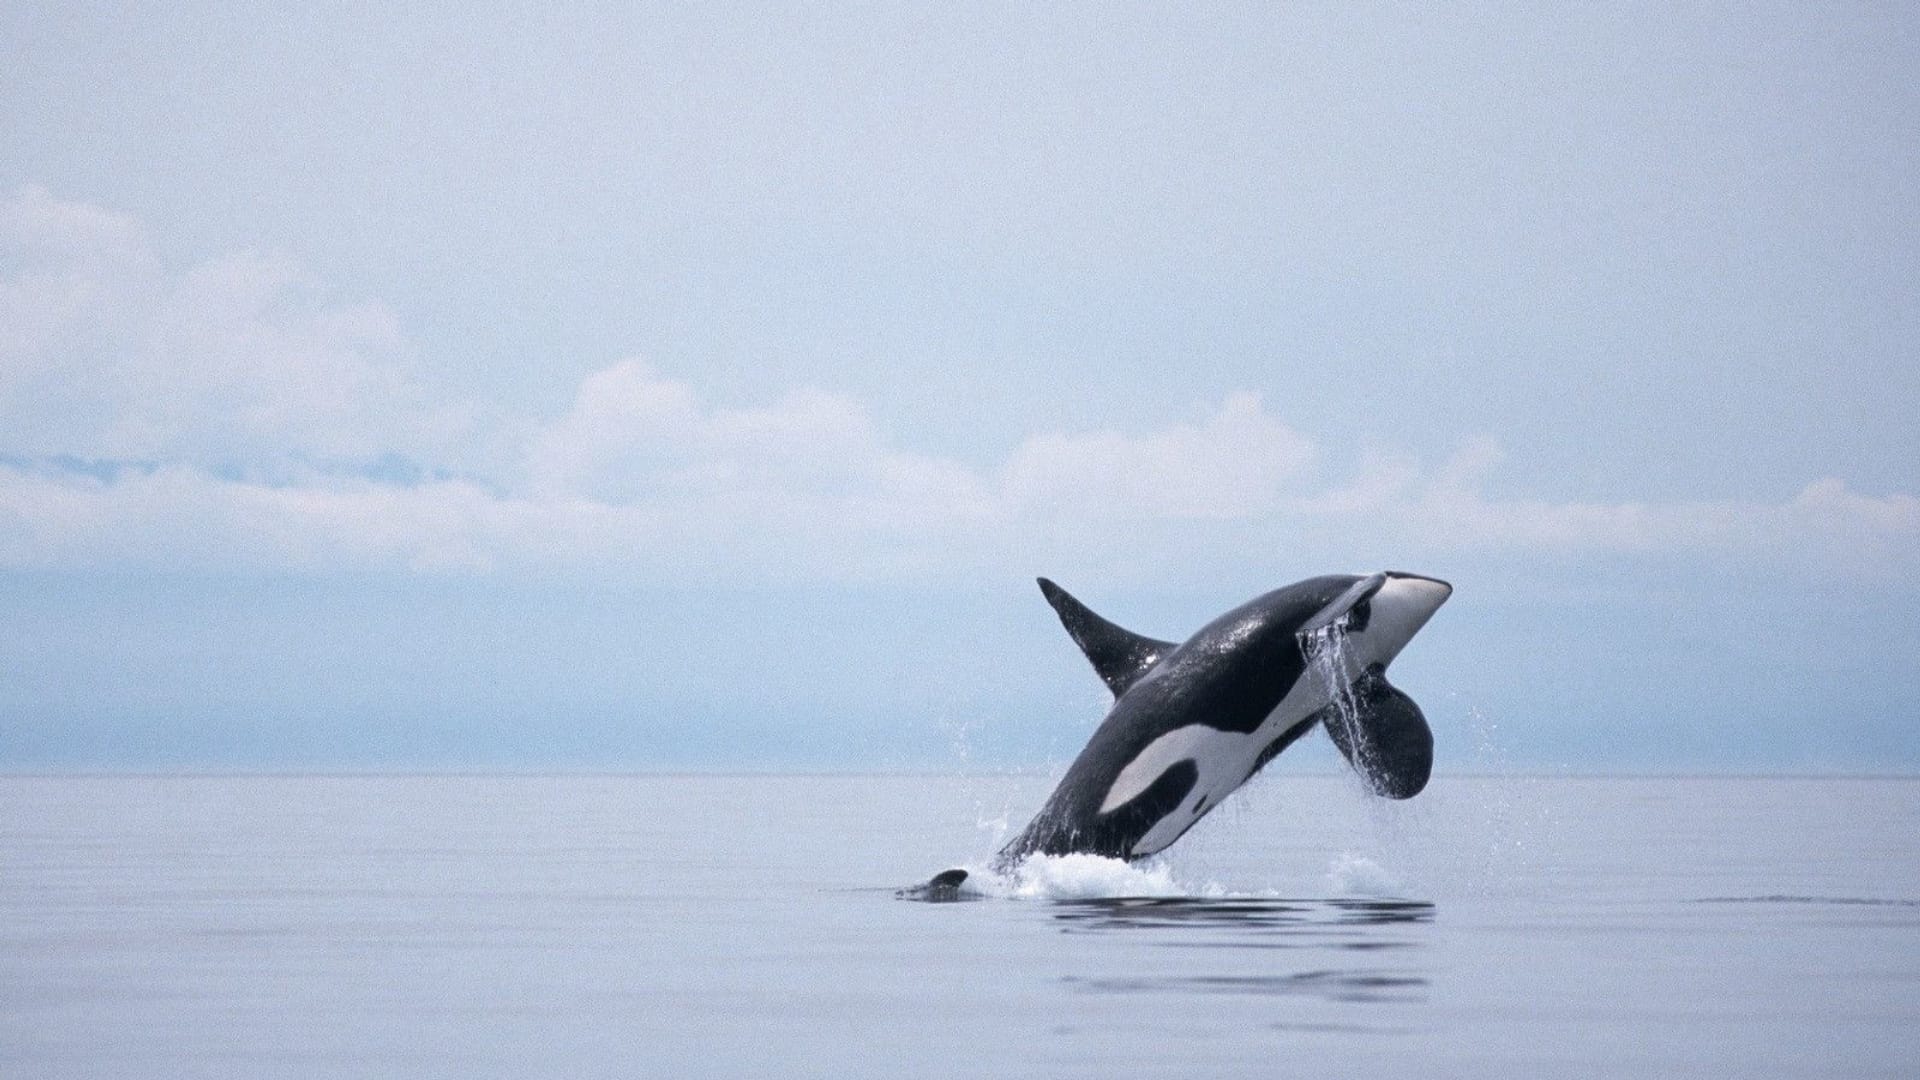 海洋巨兽鲸鱼跳跃出水面蔚蓝系列高清图片